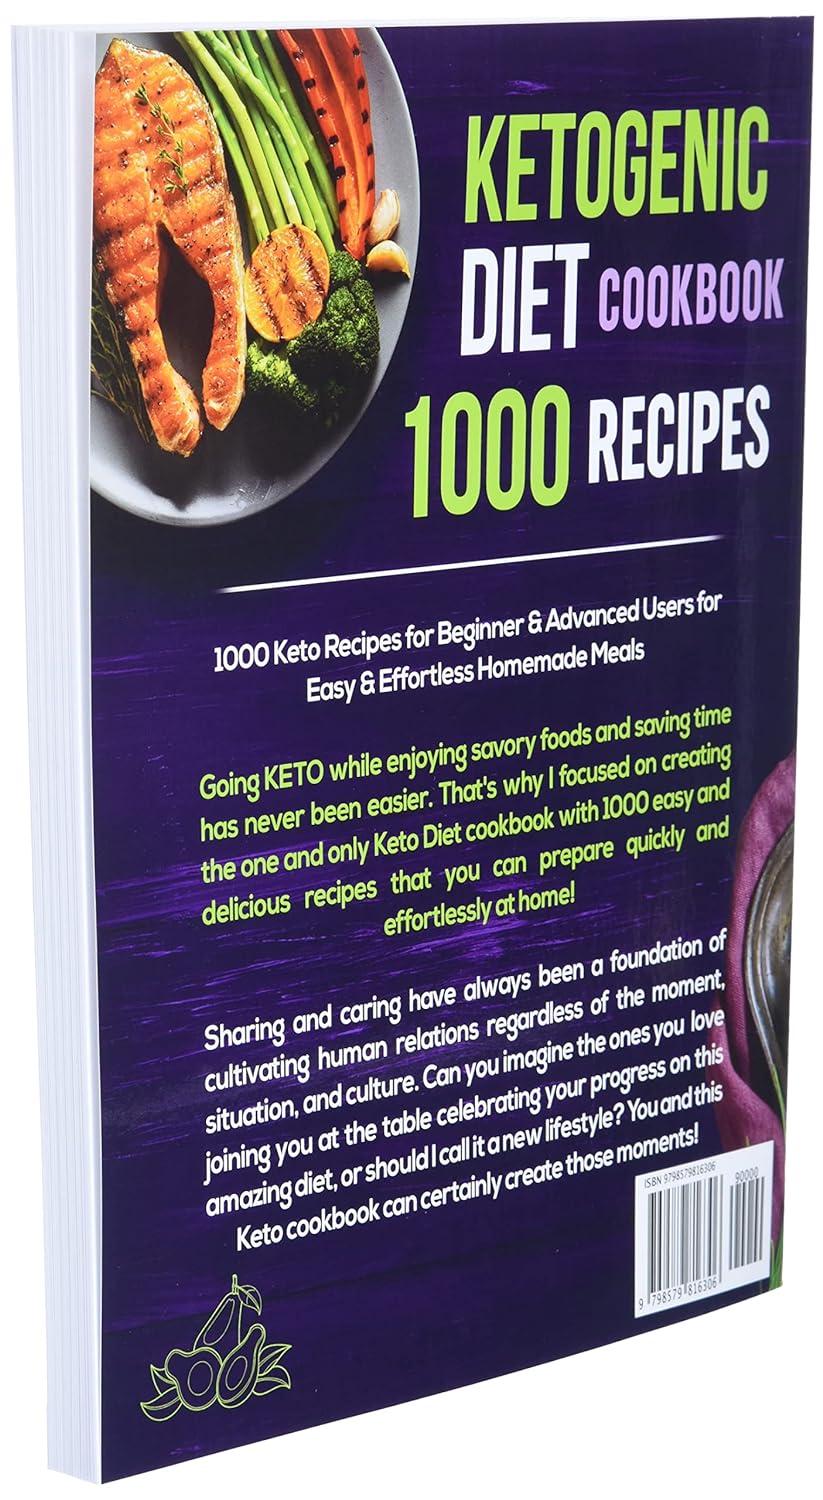 Keto Cookbook Review